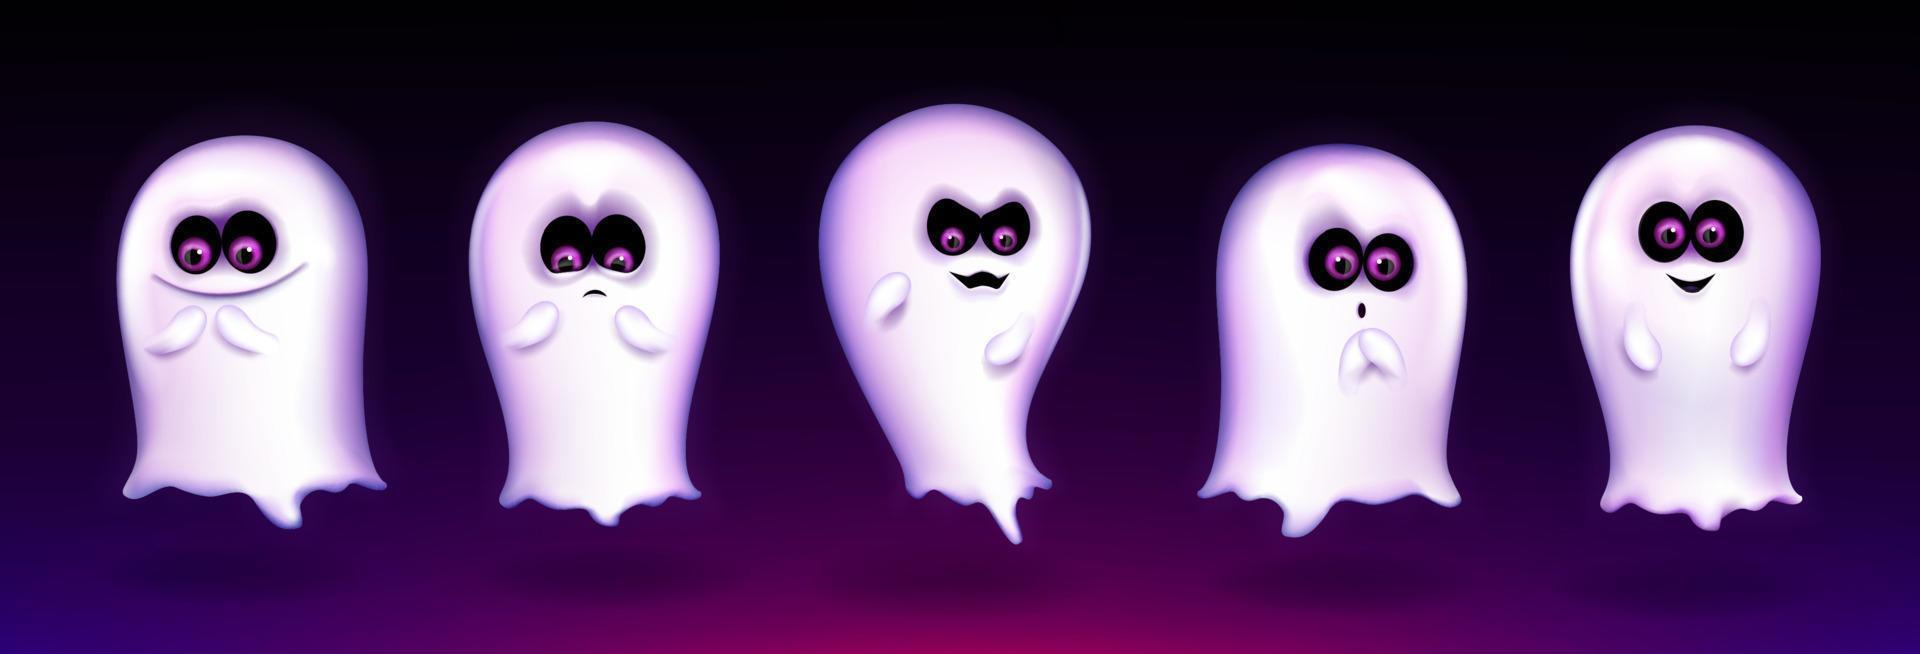 fantôme mignon, drôle d'emoji express de créature d'halloween vecteur